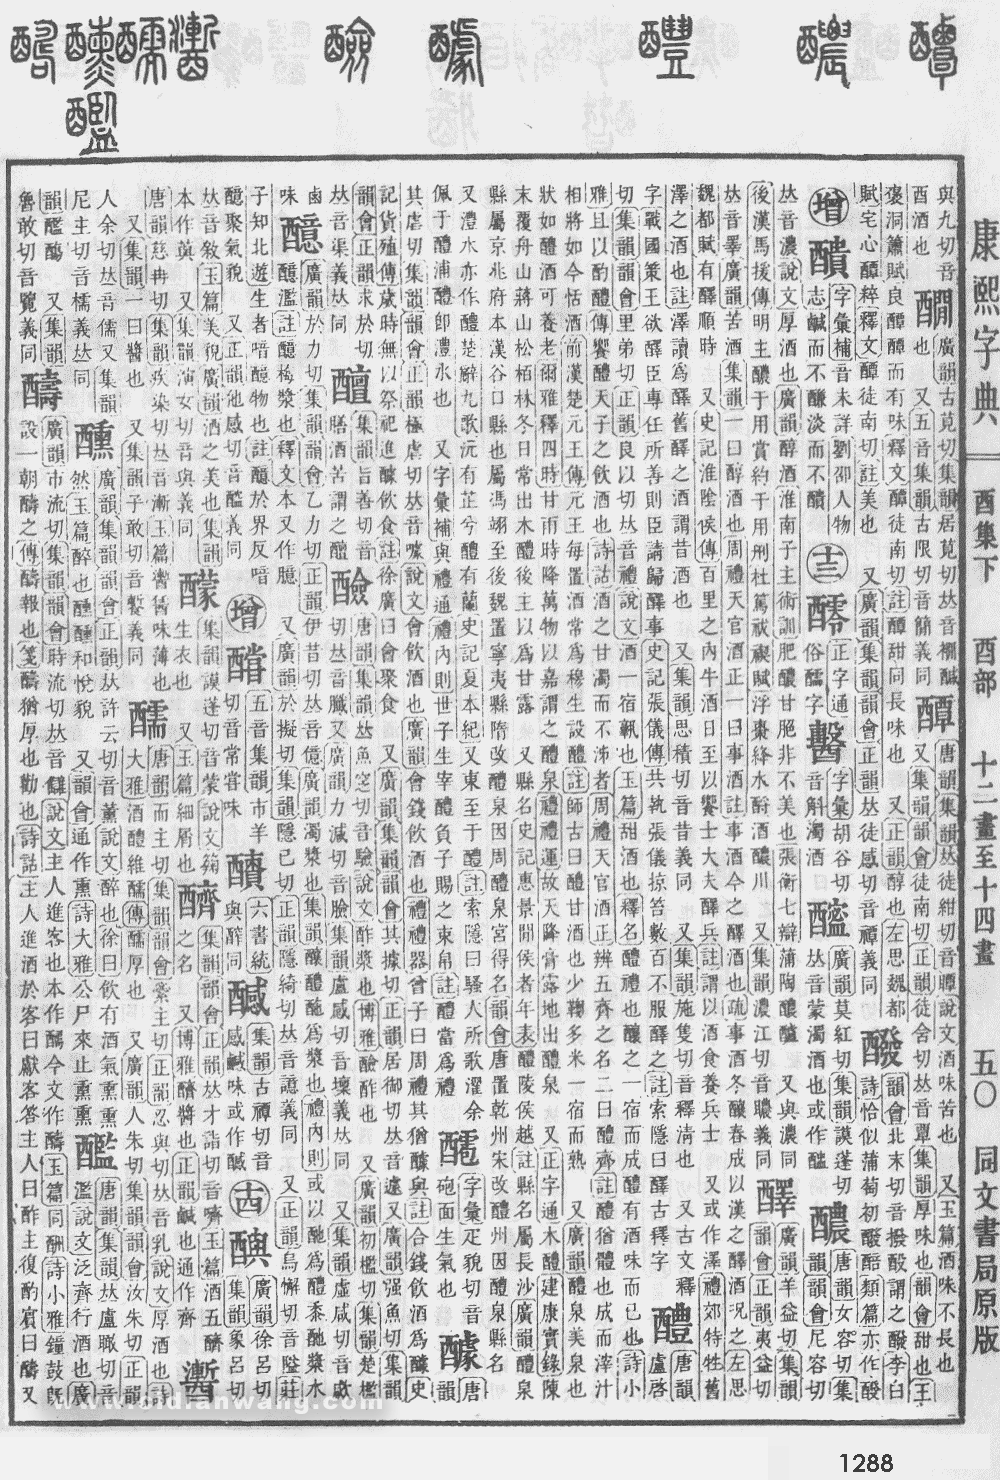 康熙字典掃描版第1288頁